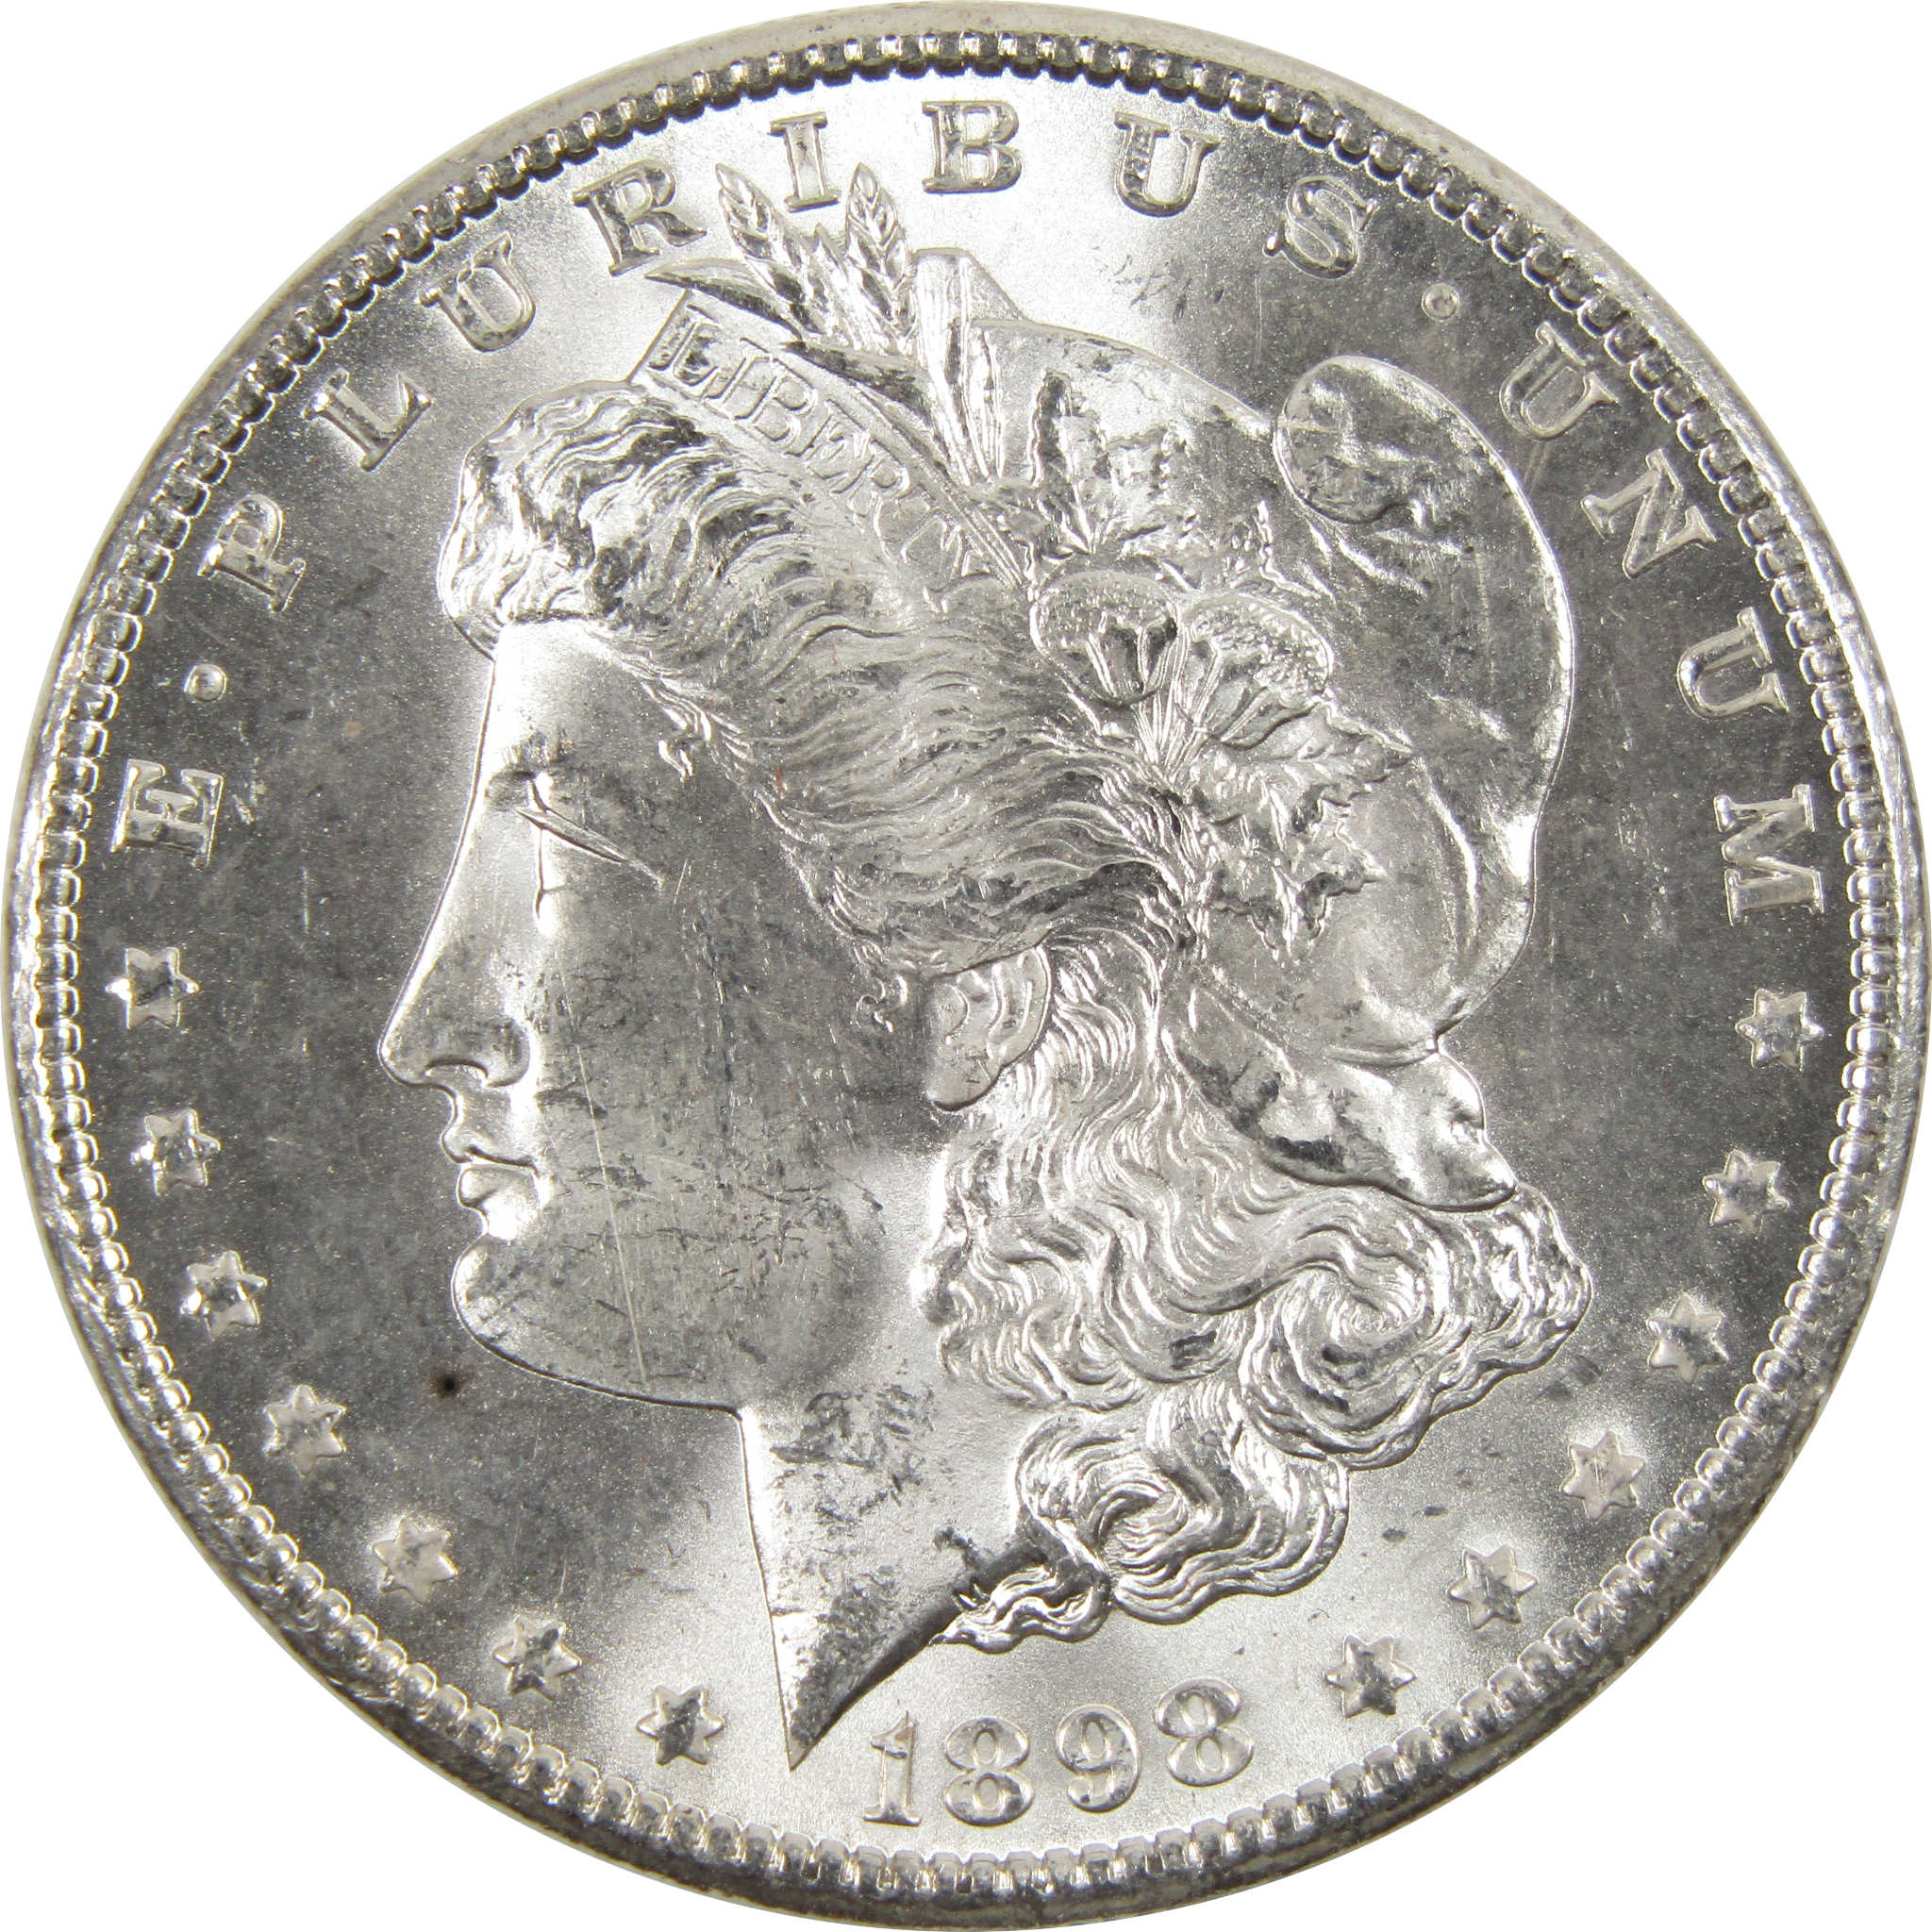 1898 O Morgan Dollar BU Uncirculated 90% Silver $1 Coin - Morgan coin - Morgan silver dollar - Morgan silver dollar for sale - Profile Coins &amp; Collectibles